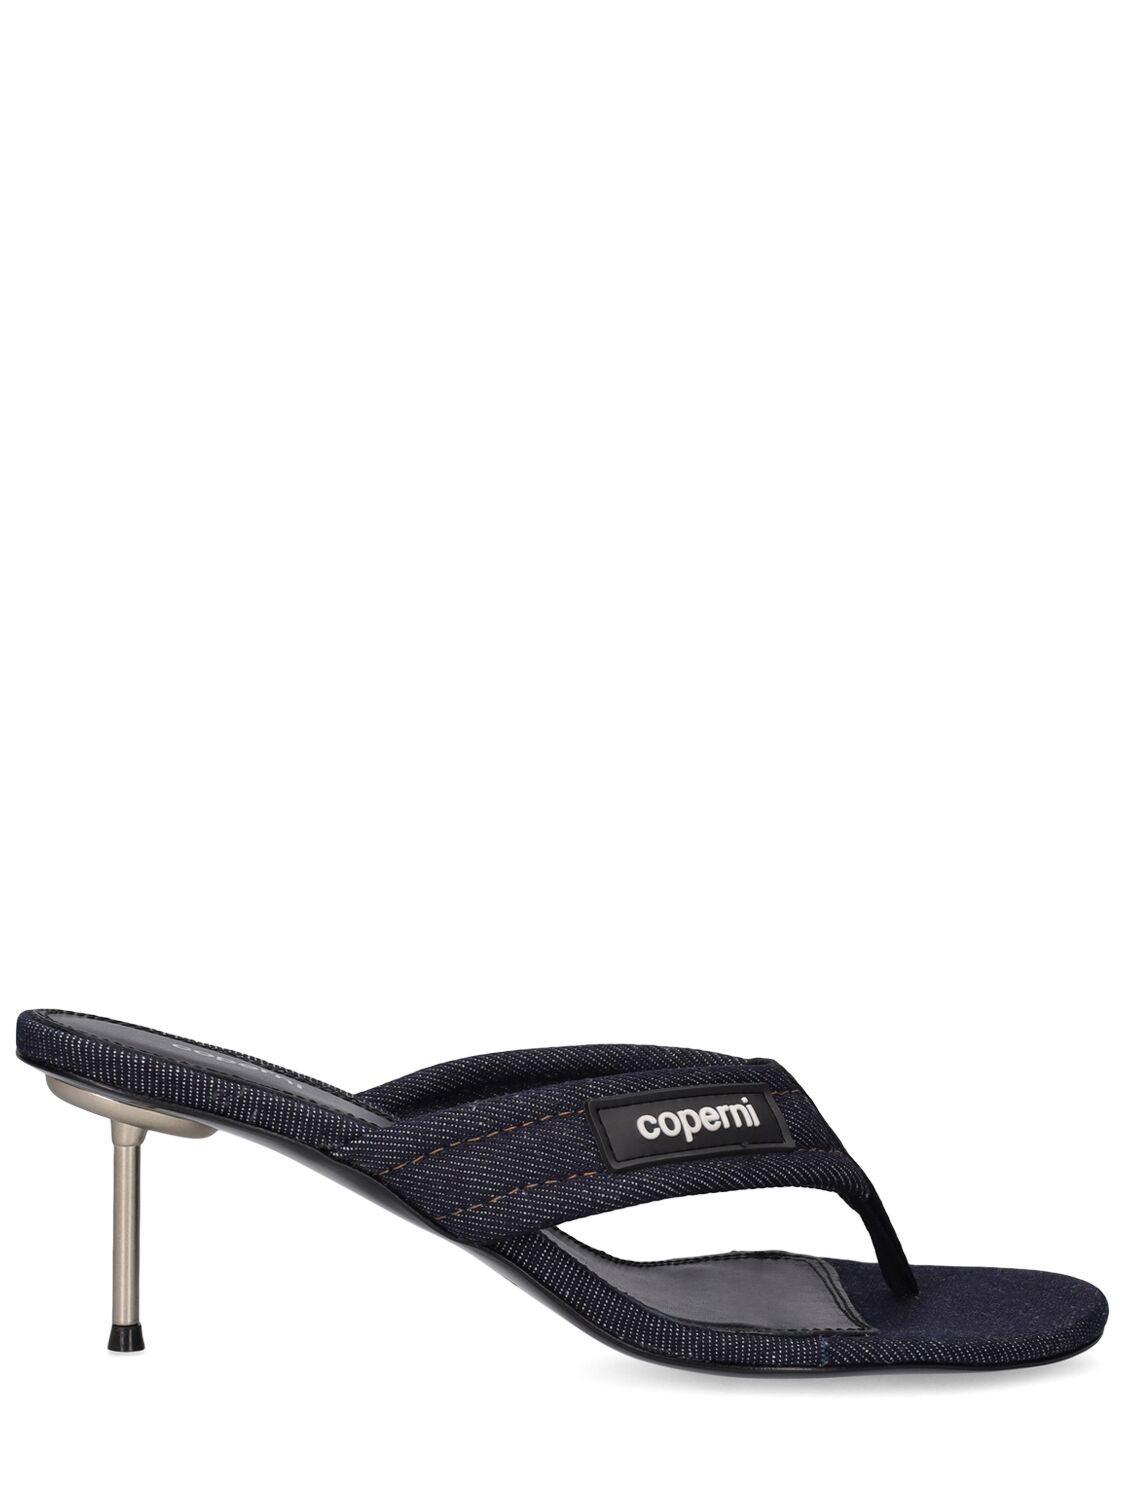 Mm Denim Branded Thong Sandal - COPERNI - Modalova